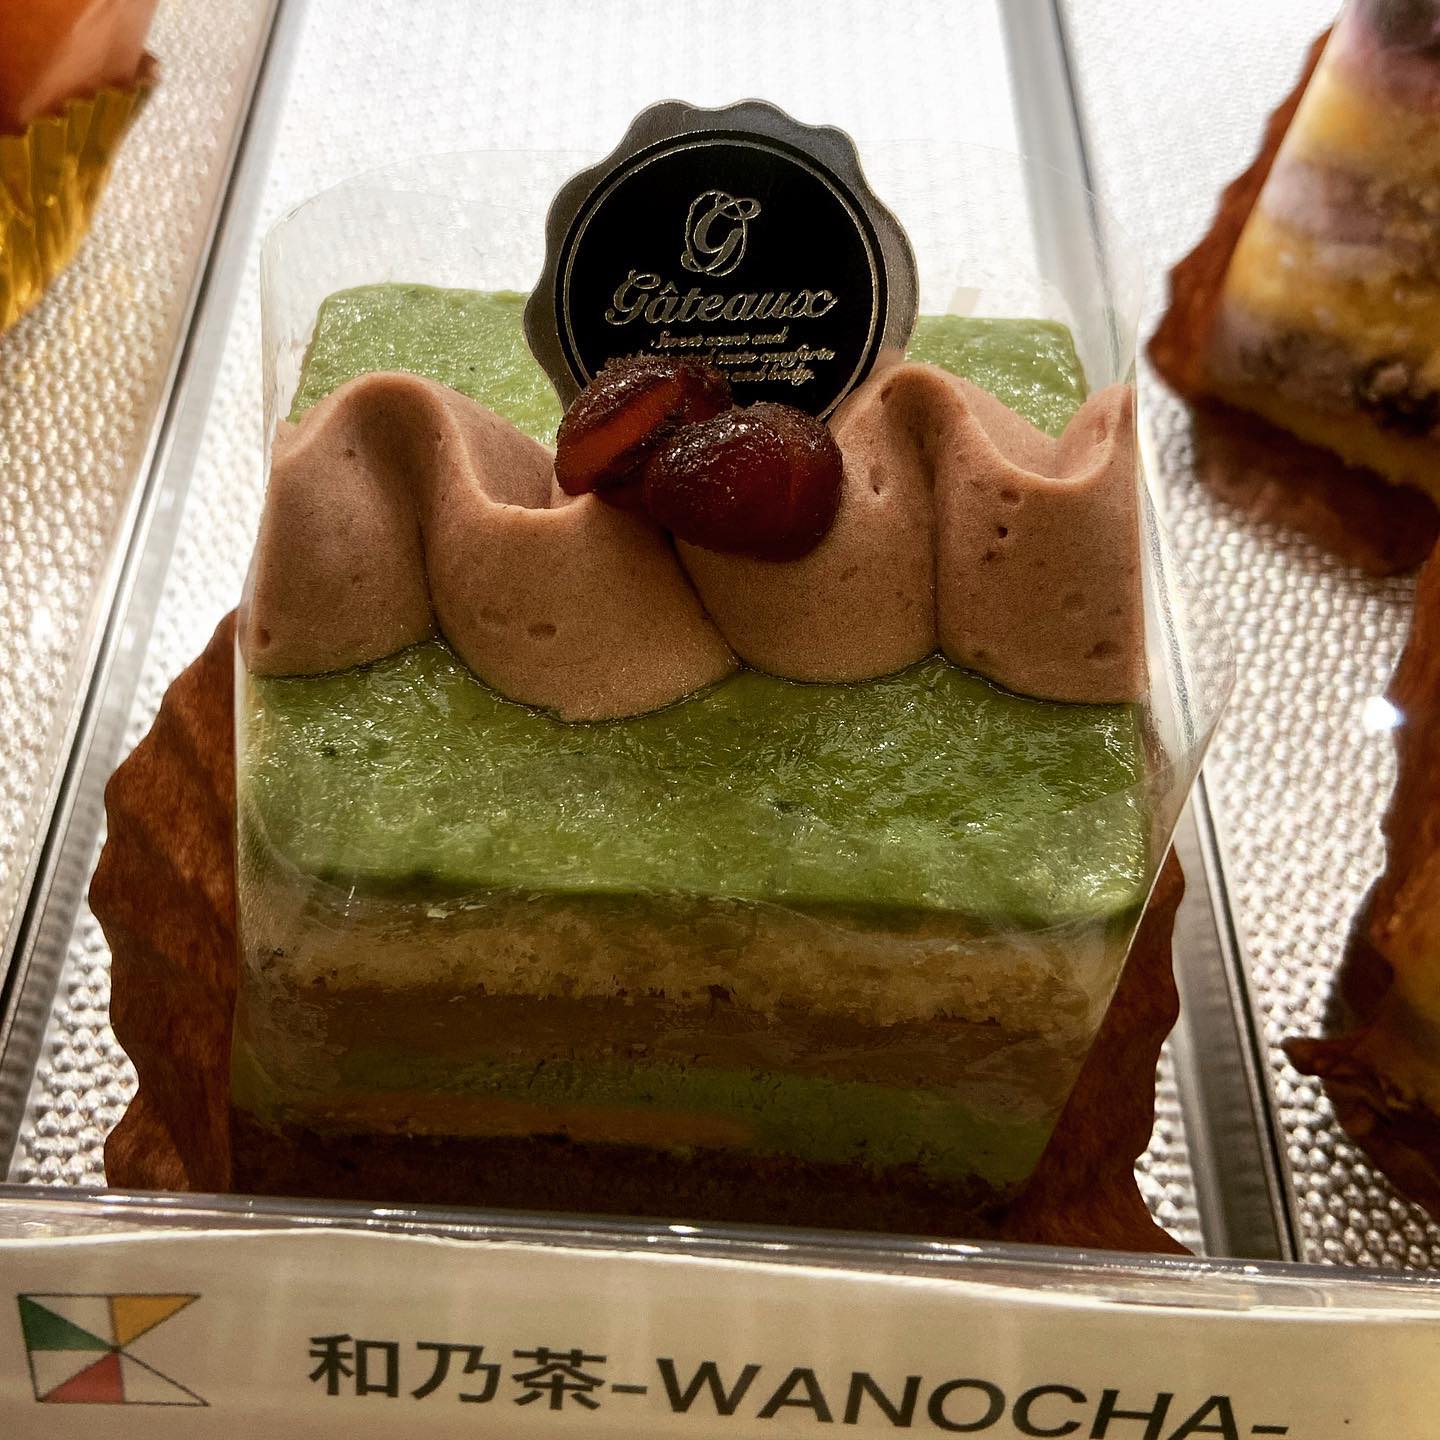 「和乃茶-WANOCHA-」 from Instagram